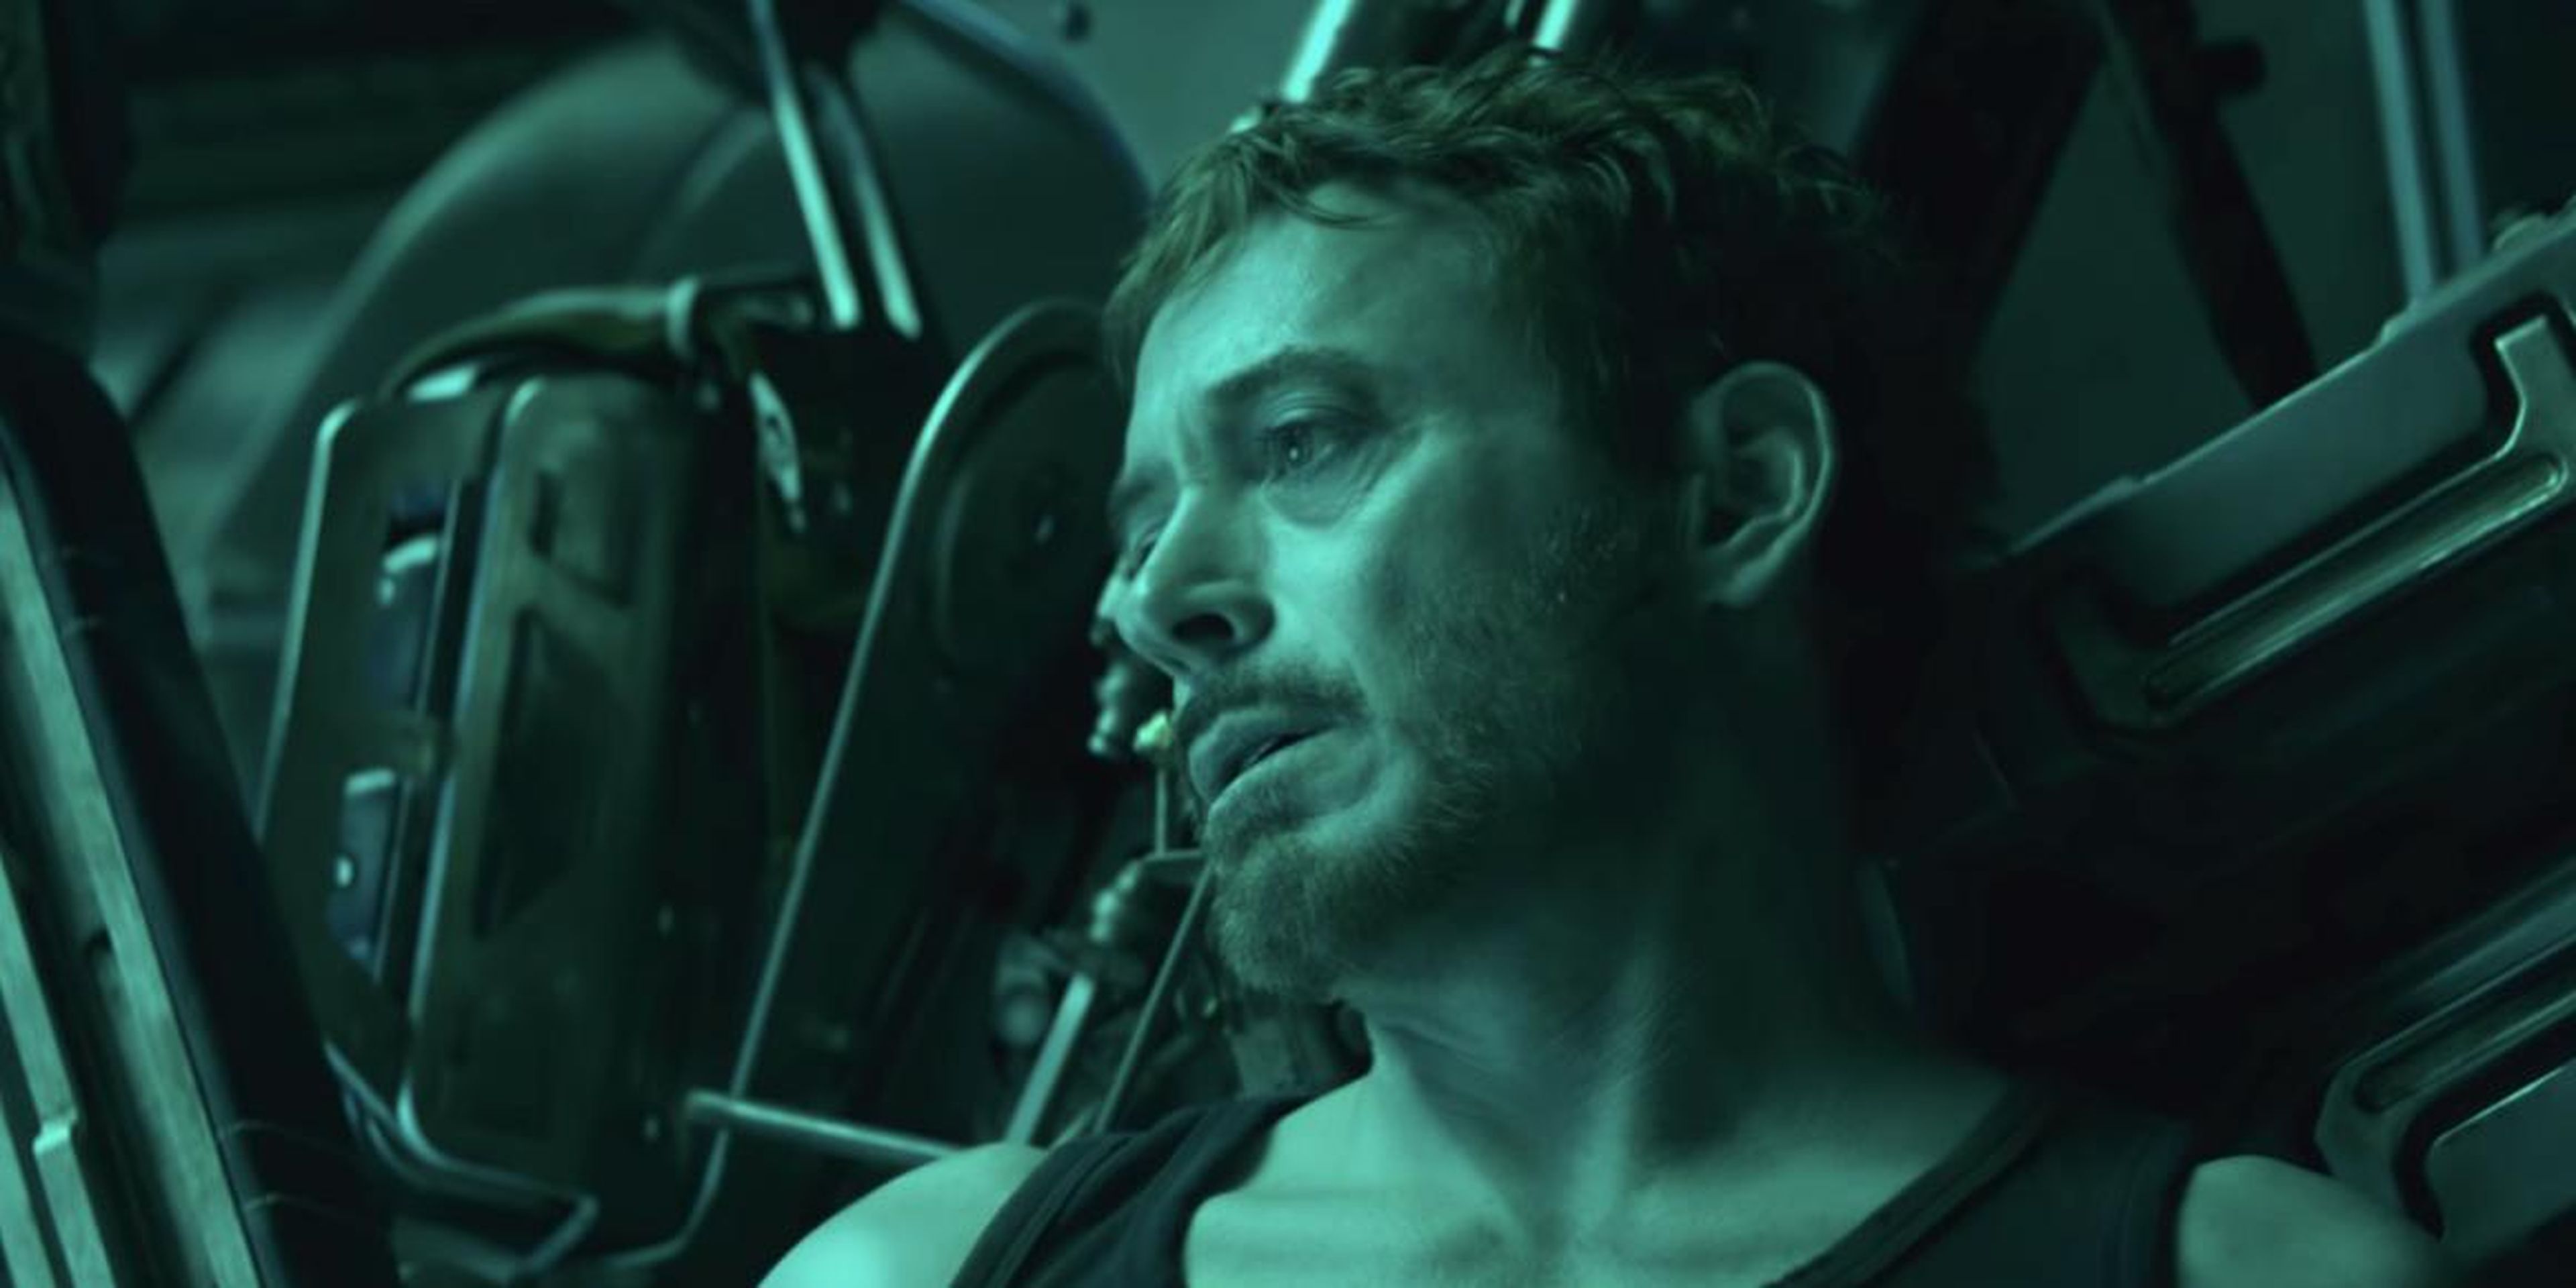 Tony Stark looks like he doesn't feel too good in the first trailer for "Avengers: Endgame."